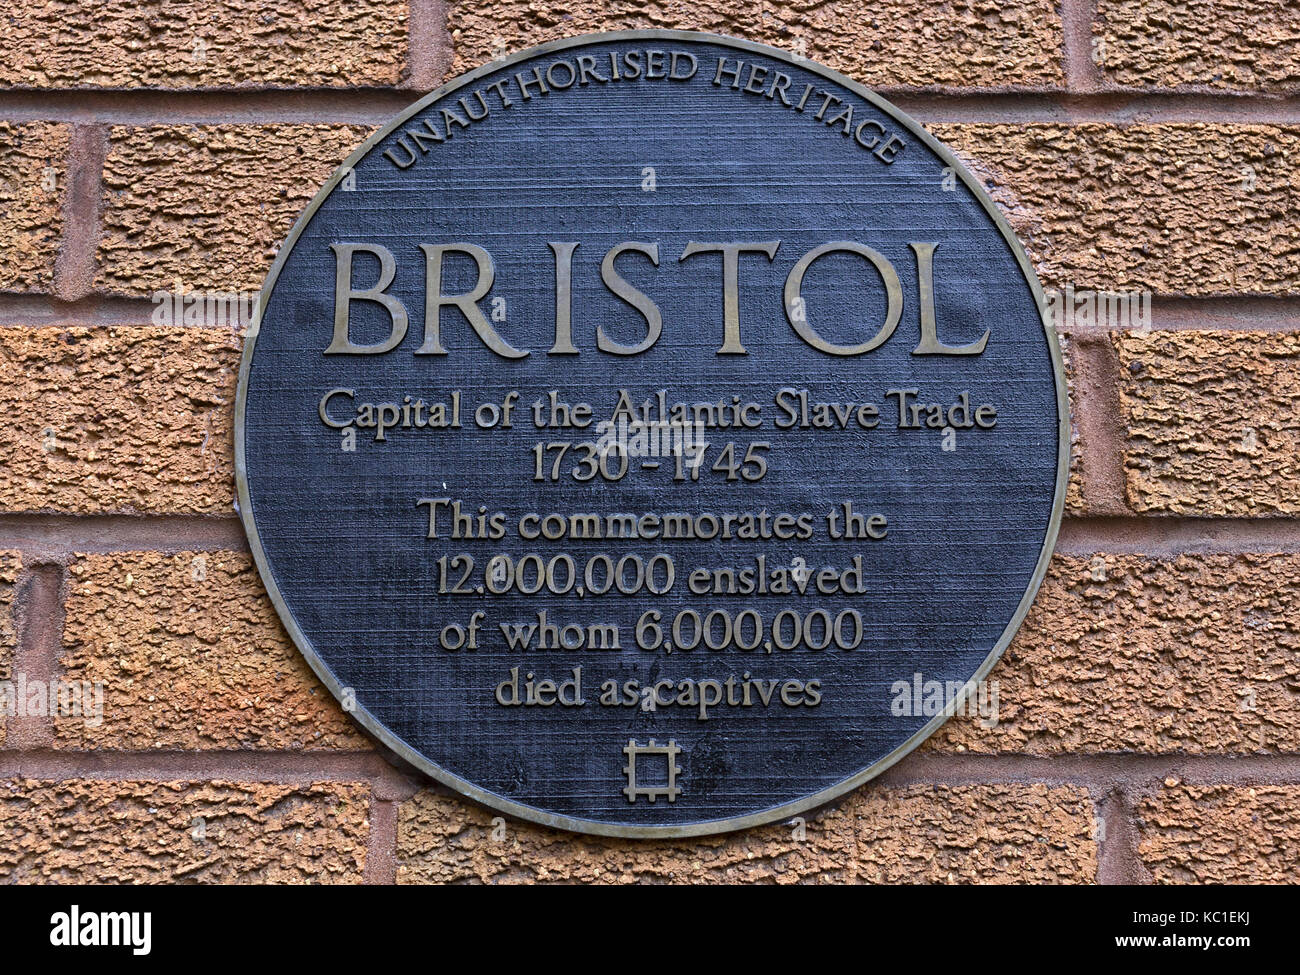 Una placa del artista will Coles que Marca la participación de Bristol en el comercio de esclavos del Atlántico. Es similar a una que se encuentra en una estatua de Edward Colston. Foto de stock